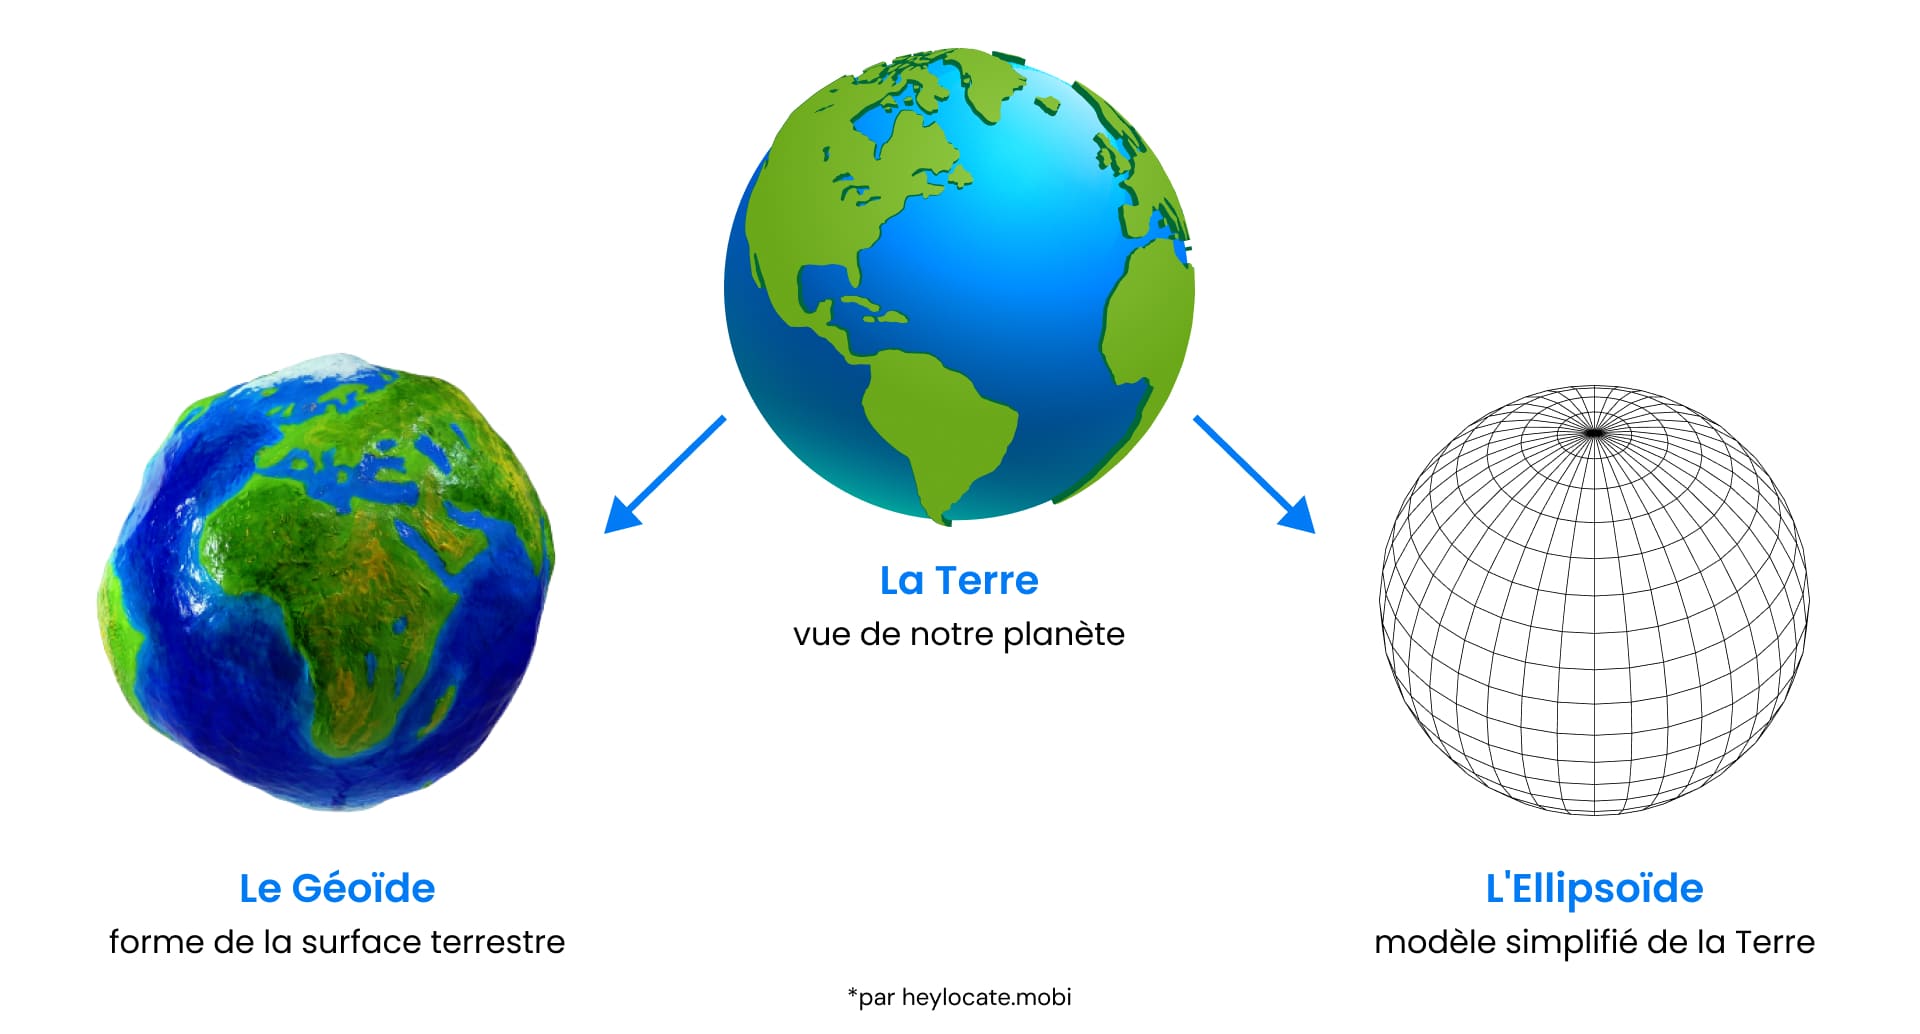 Un trio d'images comparant le géoïde, la forme réelle de la Terre, et l'ellipsoïde, un modèle simplifié de la Terre utilisé pour les cartes.